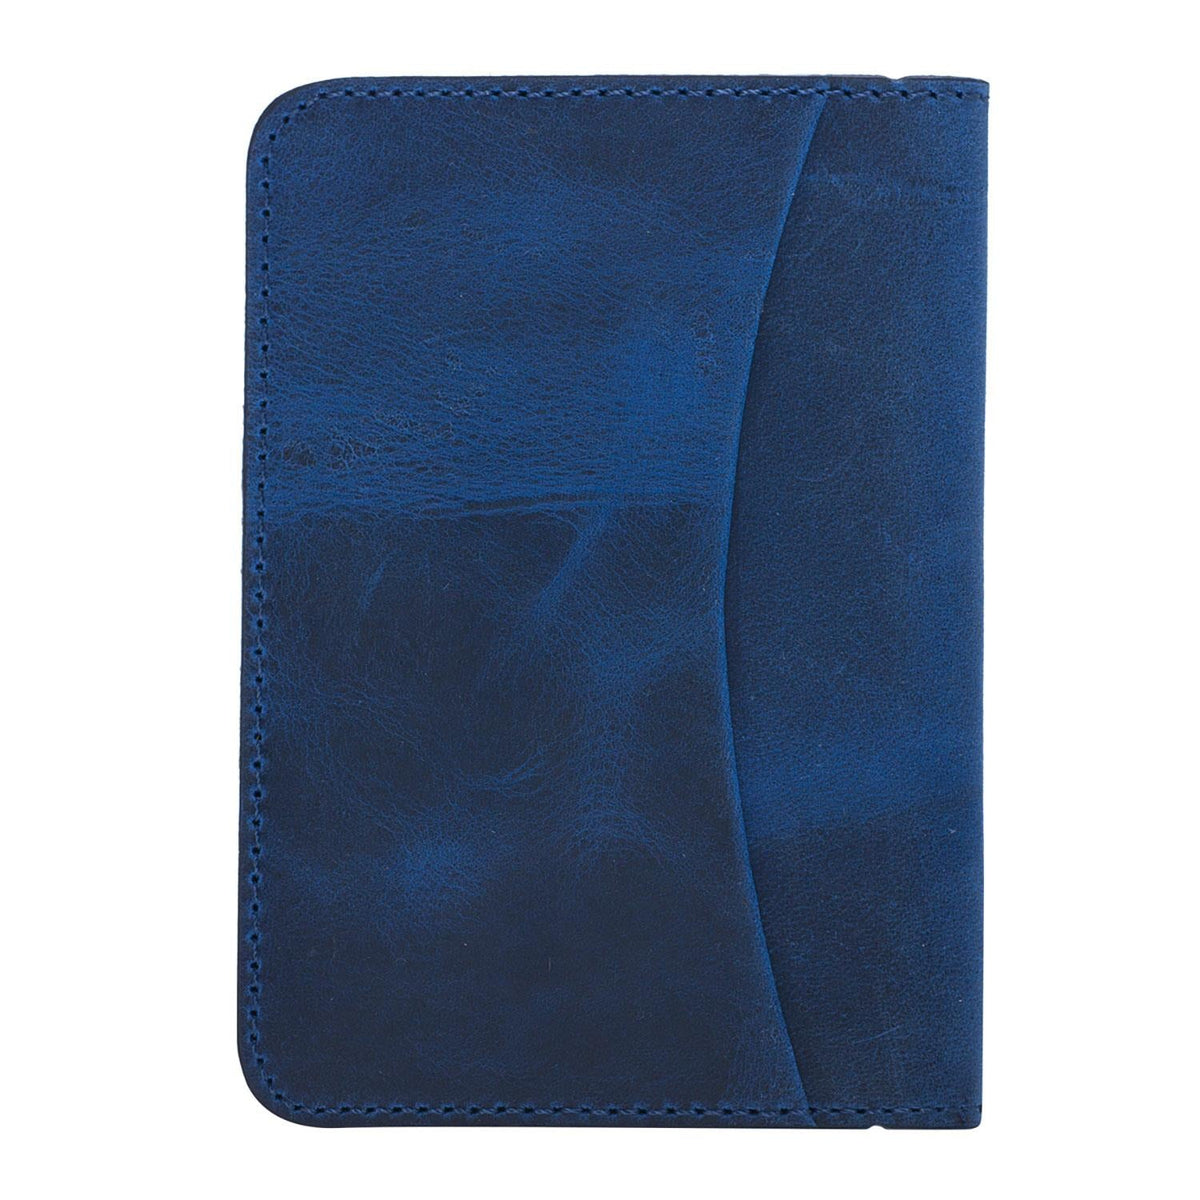 Dalfsen Leather Card Holder Blue